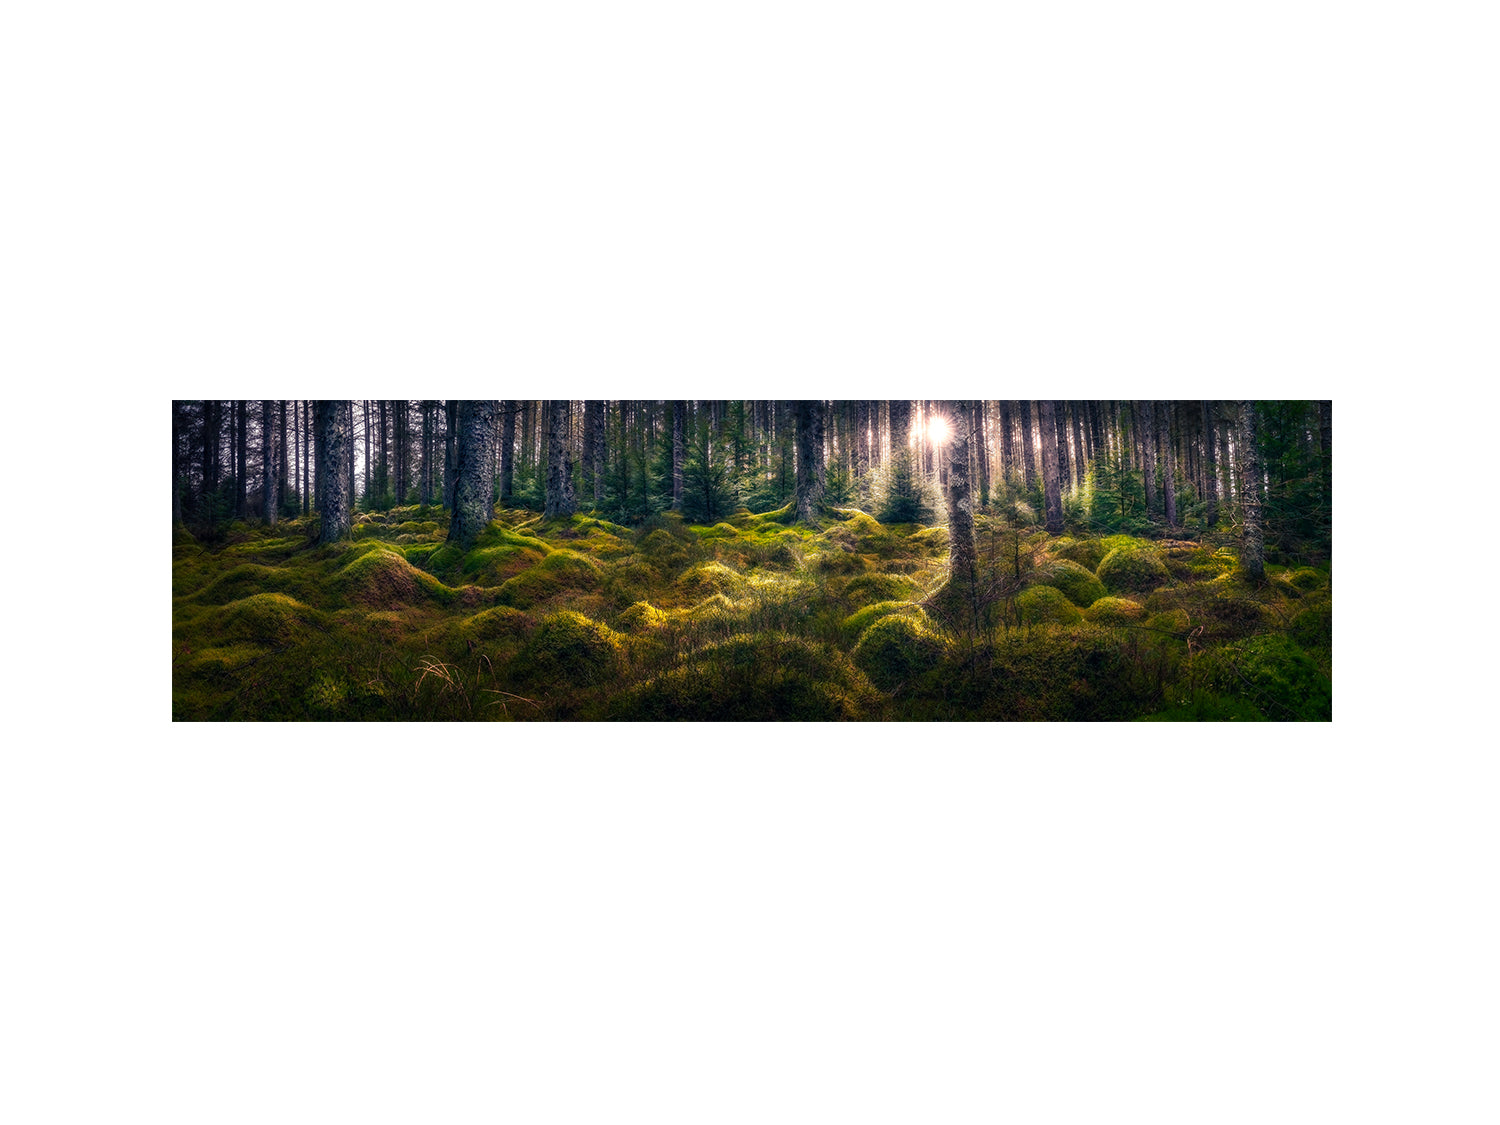 Kielder Forest's "Enchanted"